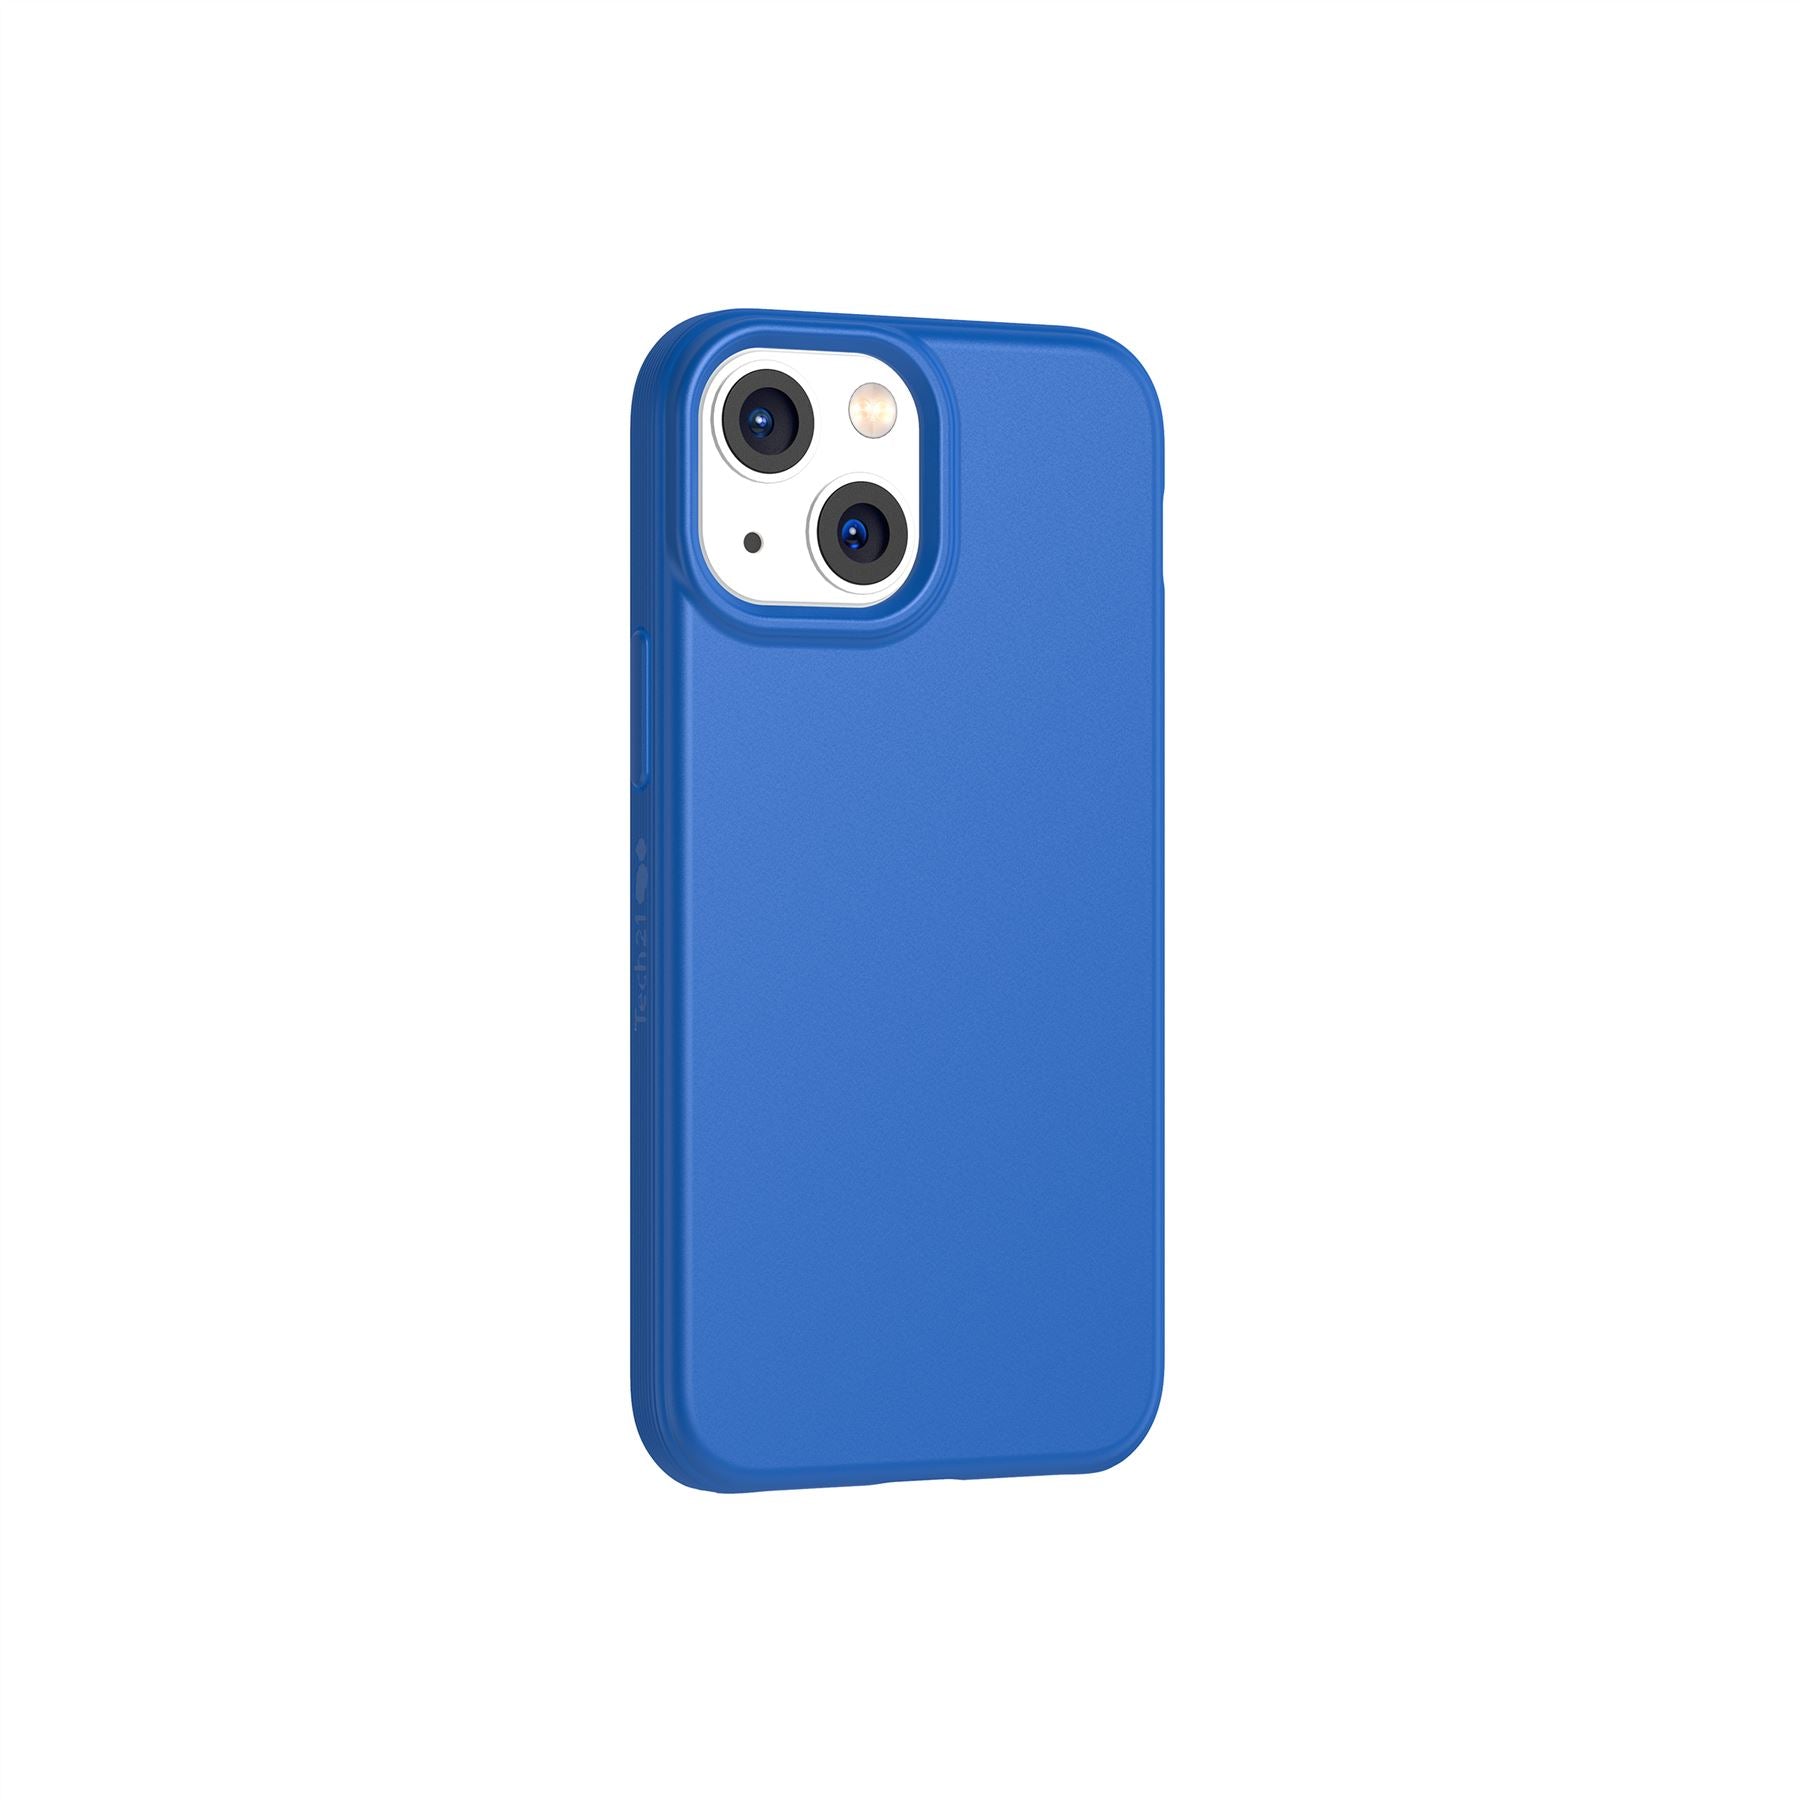 Evo Lite - Apple iPhone 13 mini Case - Classic Blue